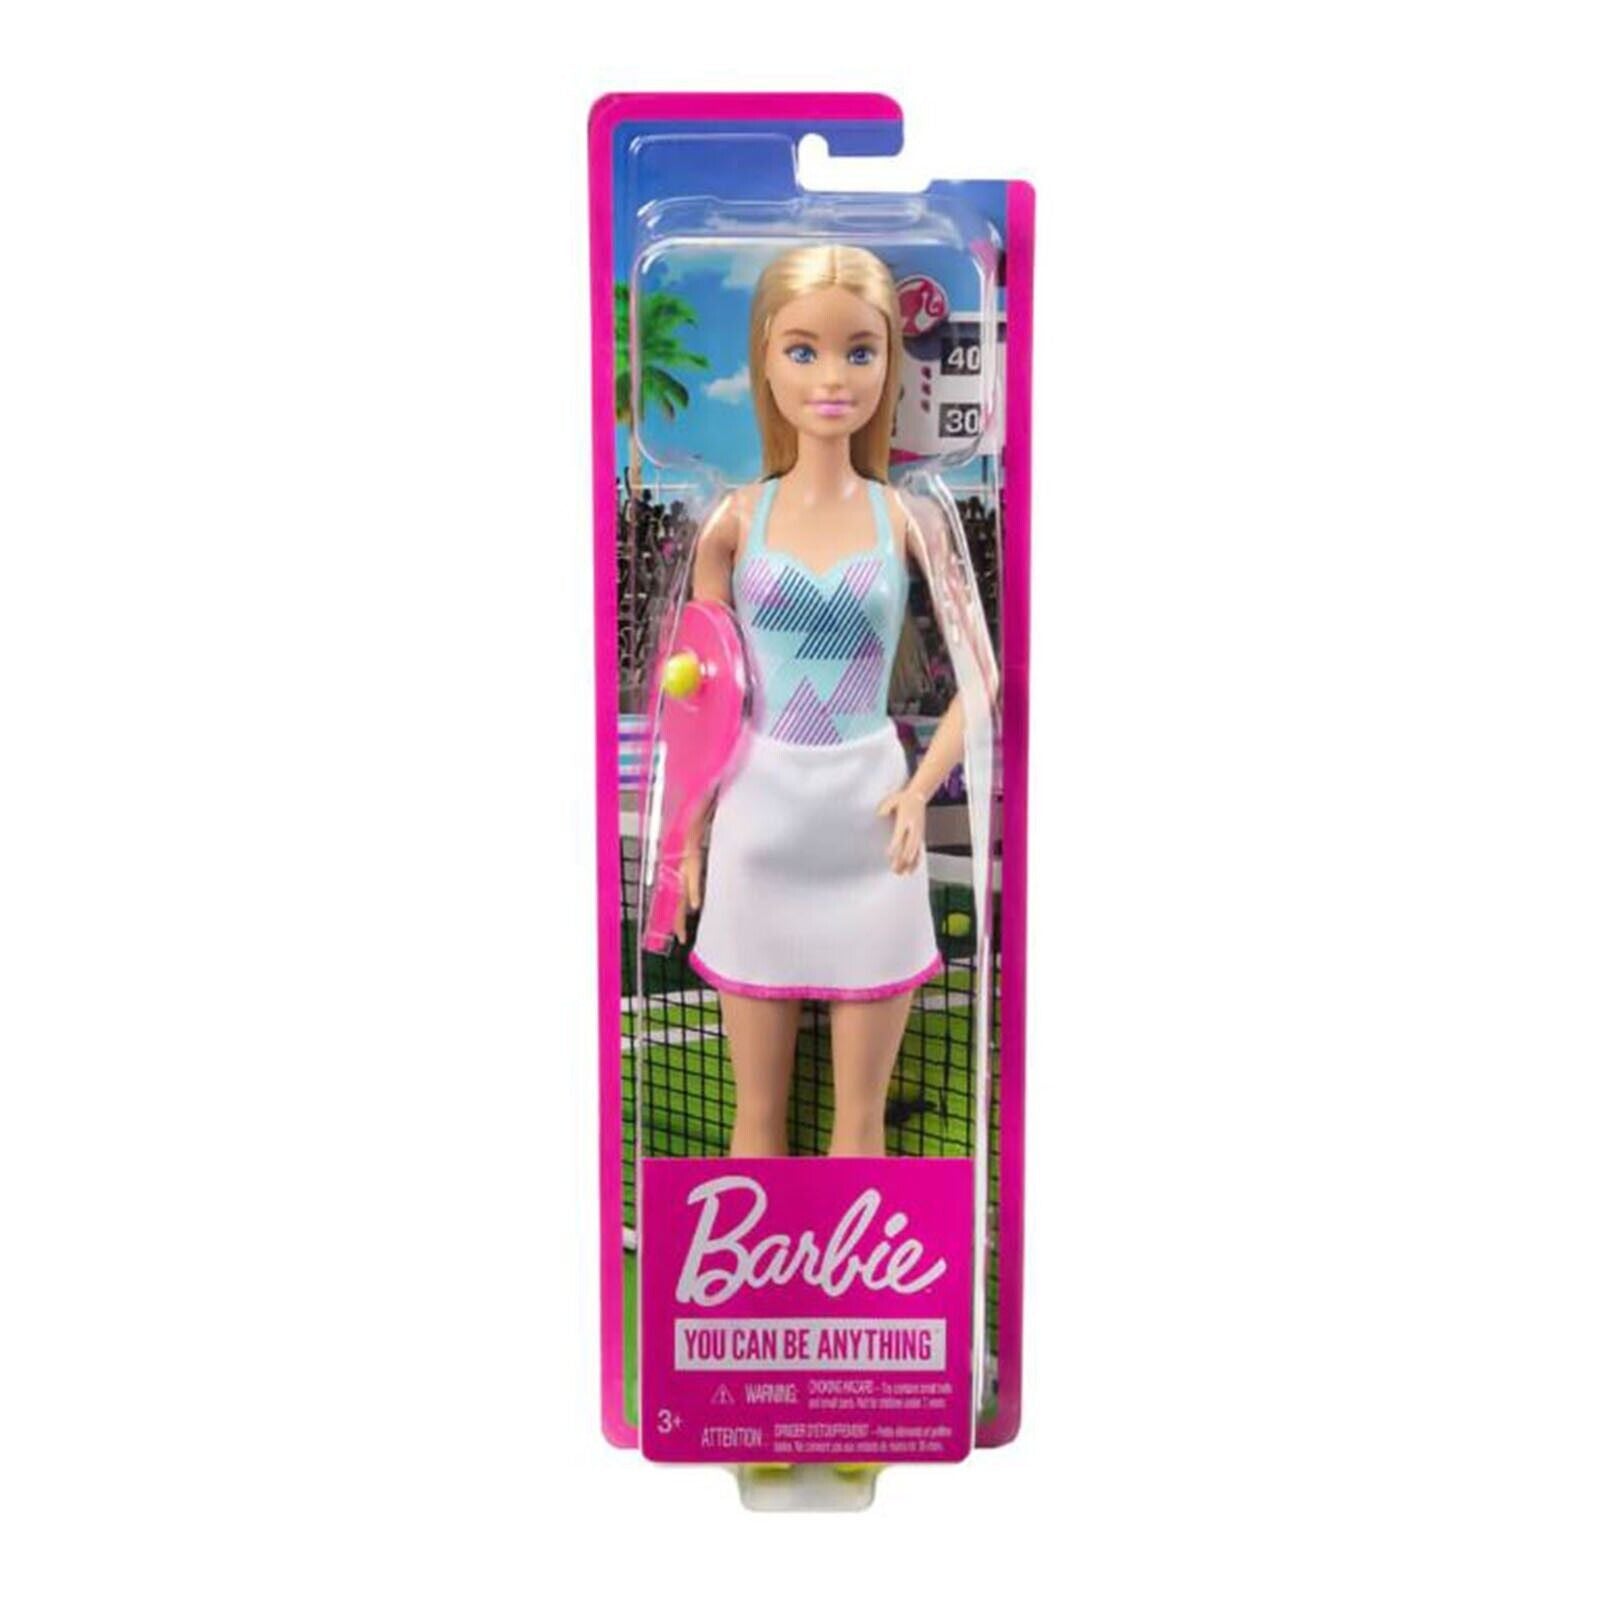 Barbie Careers Tennis Player